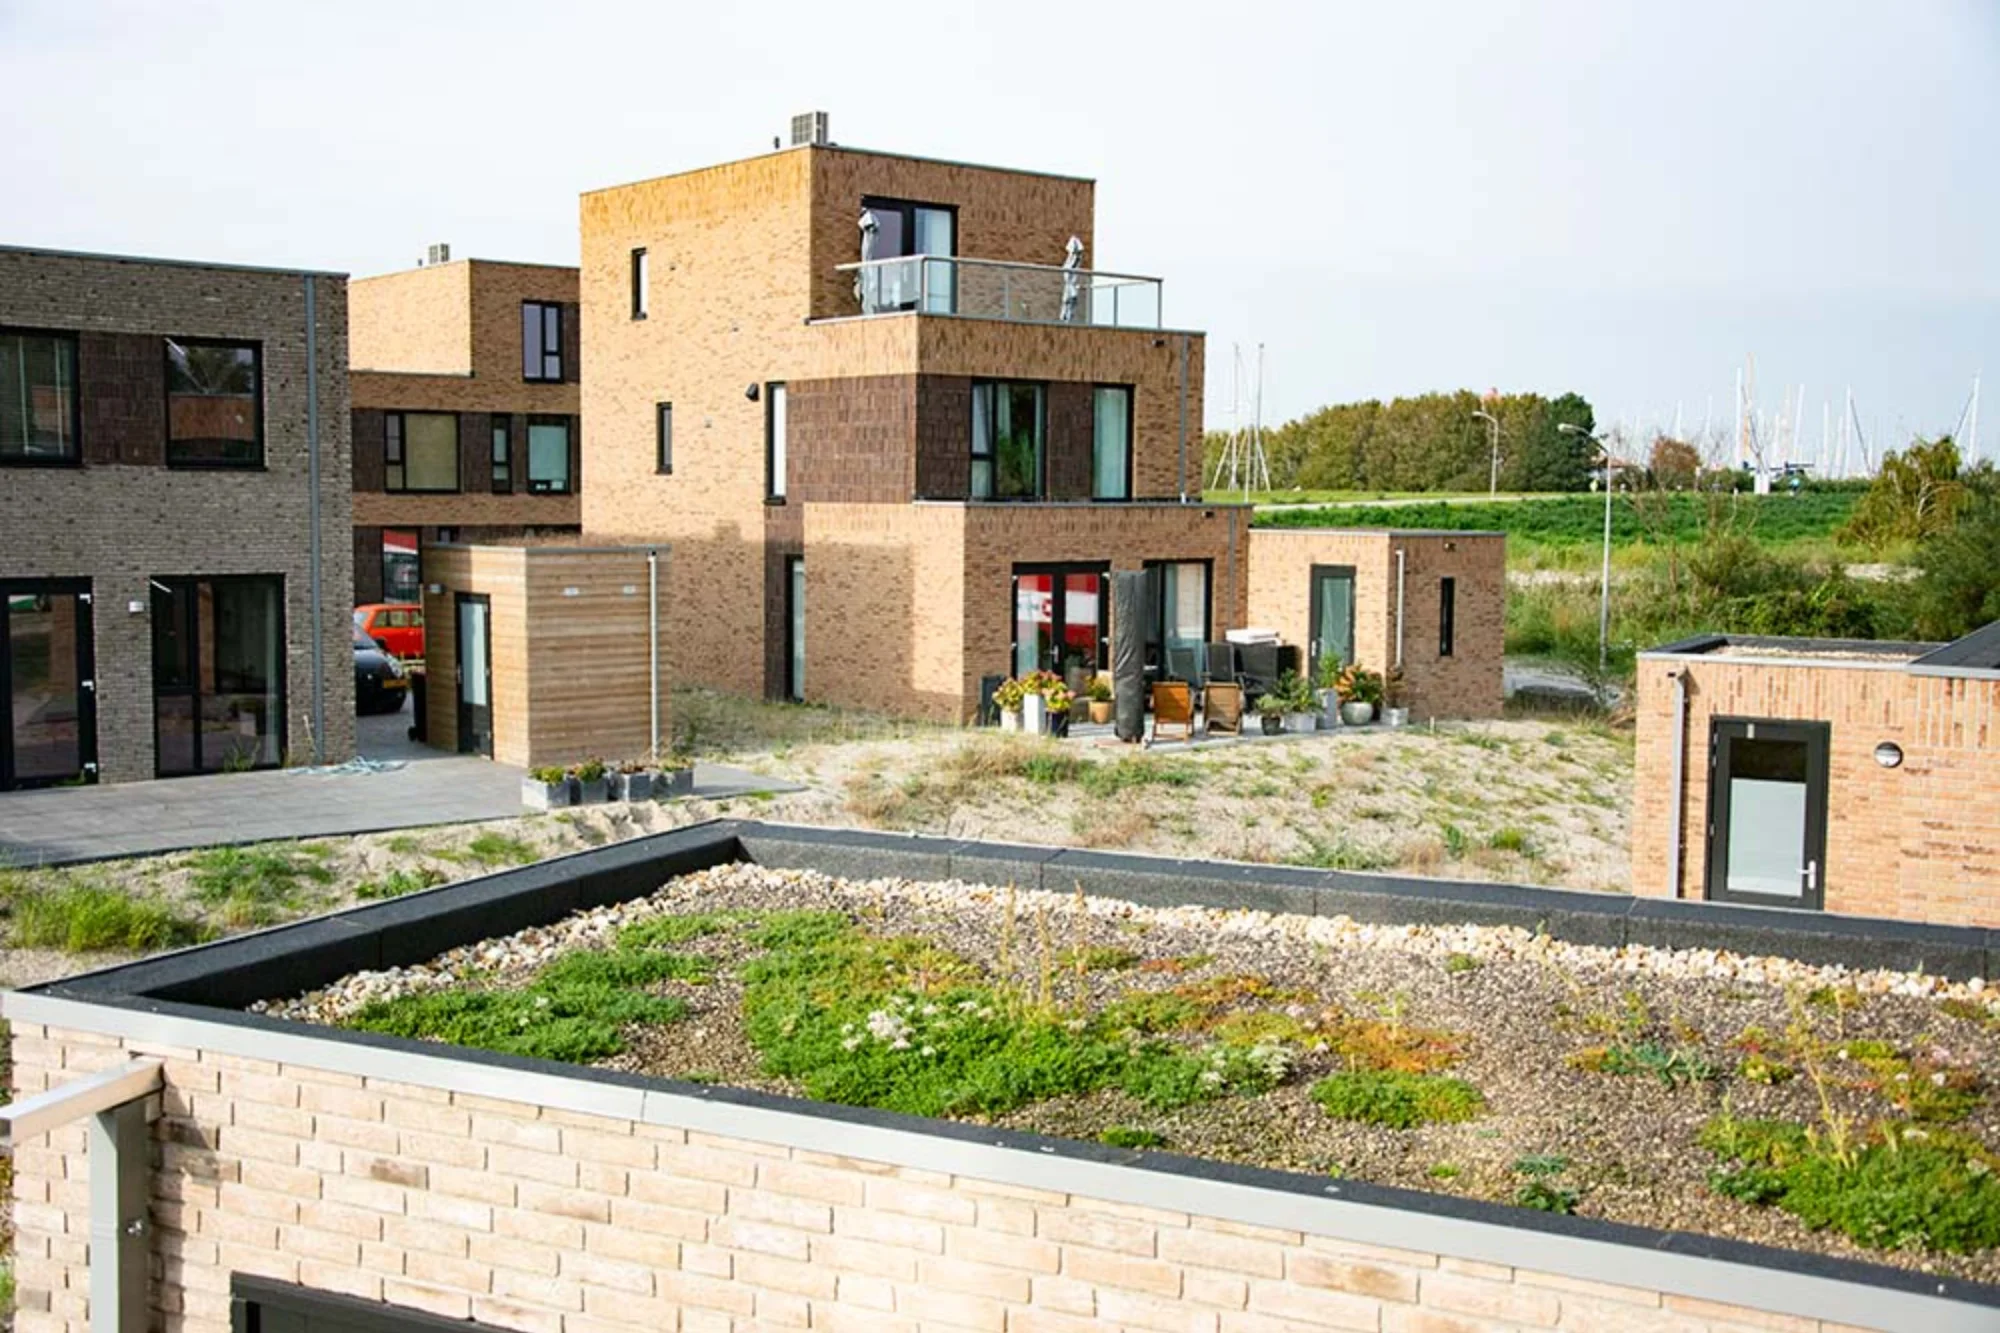 Ruim 40 groene daken voor nieuwbouwwijk Houtribhoogte 